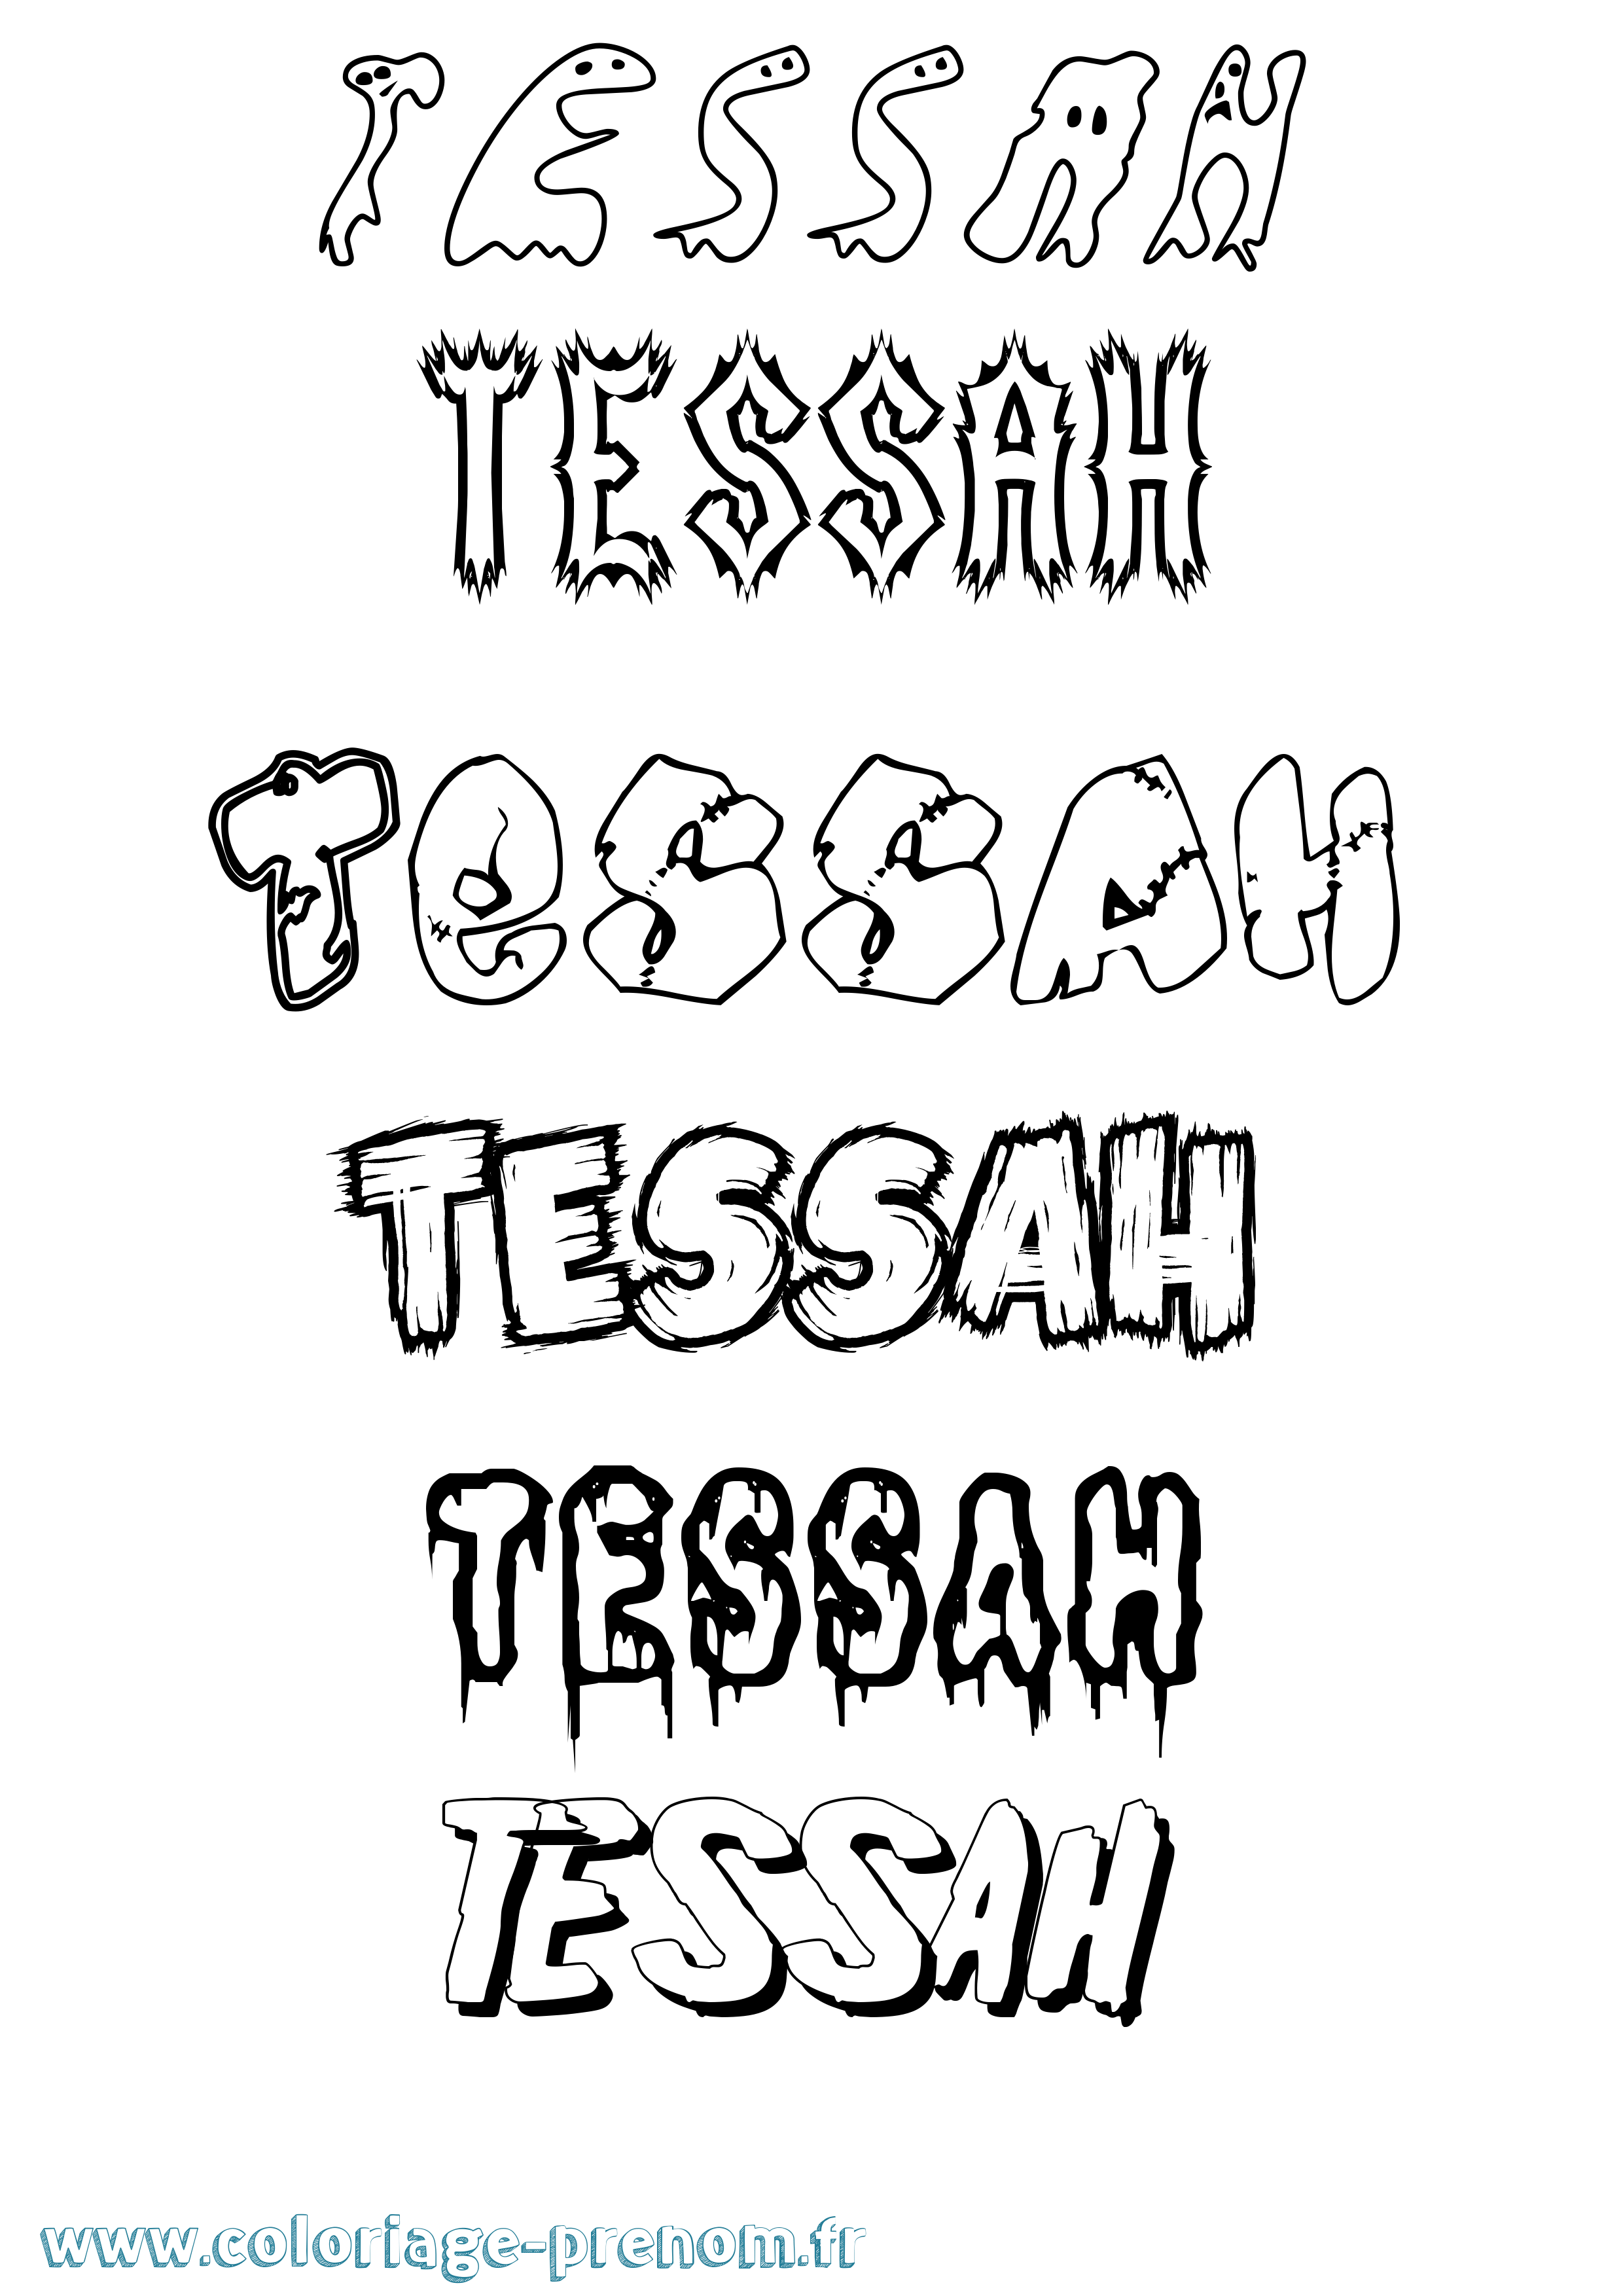 Coloriage prénom Tessah Frisson